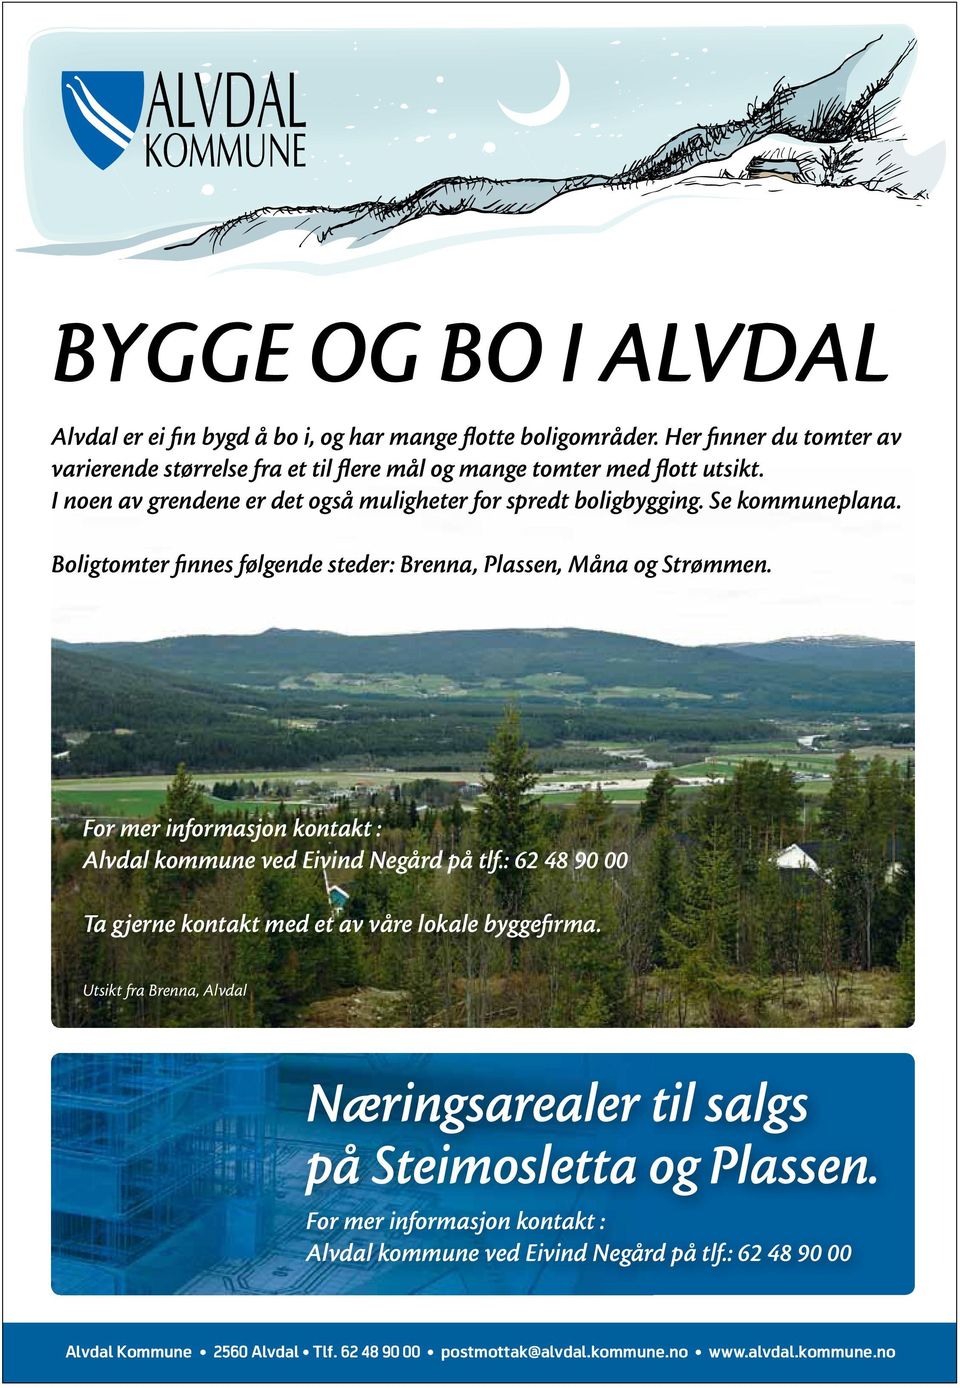 For mer informasjon kontakt : Alvdal kommune ved Eivind Negård på tlf.: 62 48 90 00 Ta gjerne kontakt med et av våre lokale byggefirma.